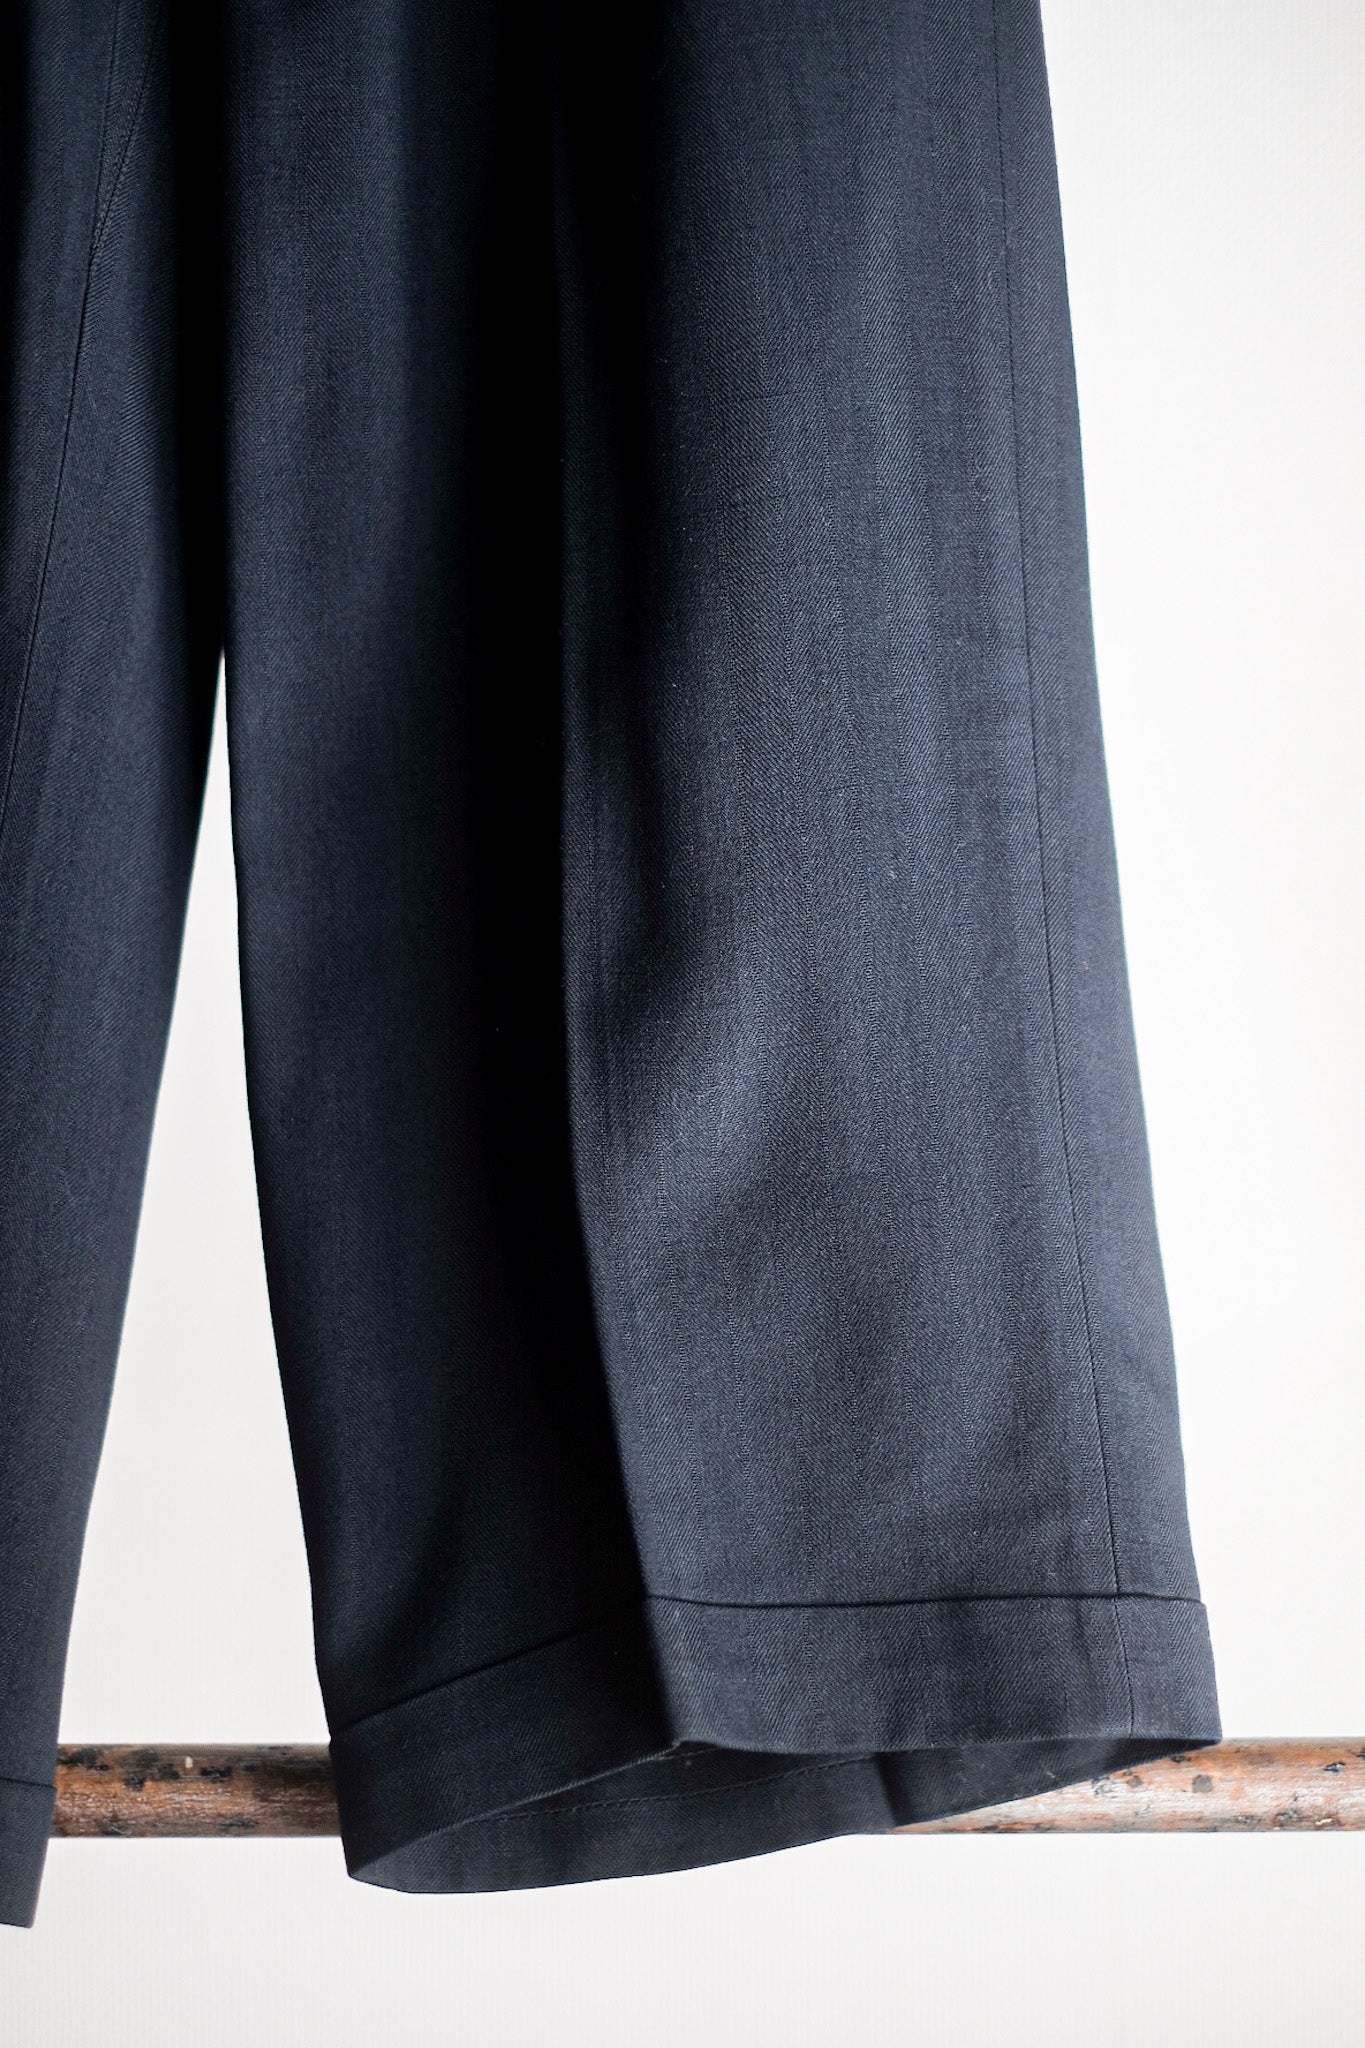 [~ 40's] pantalon allemand de laine de rayonne vintage